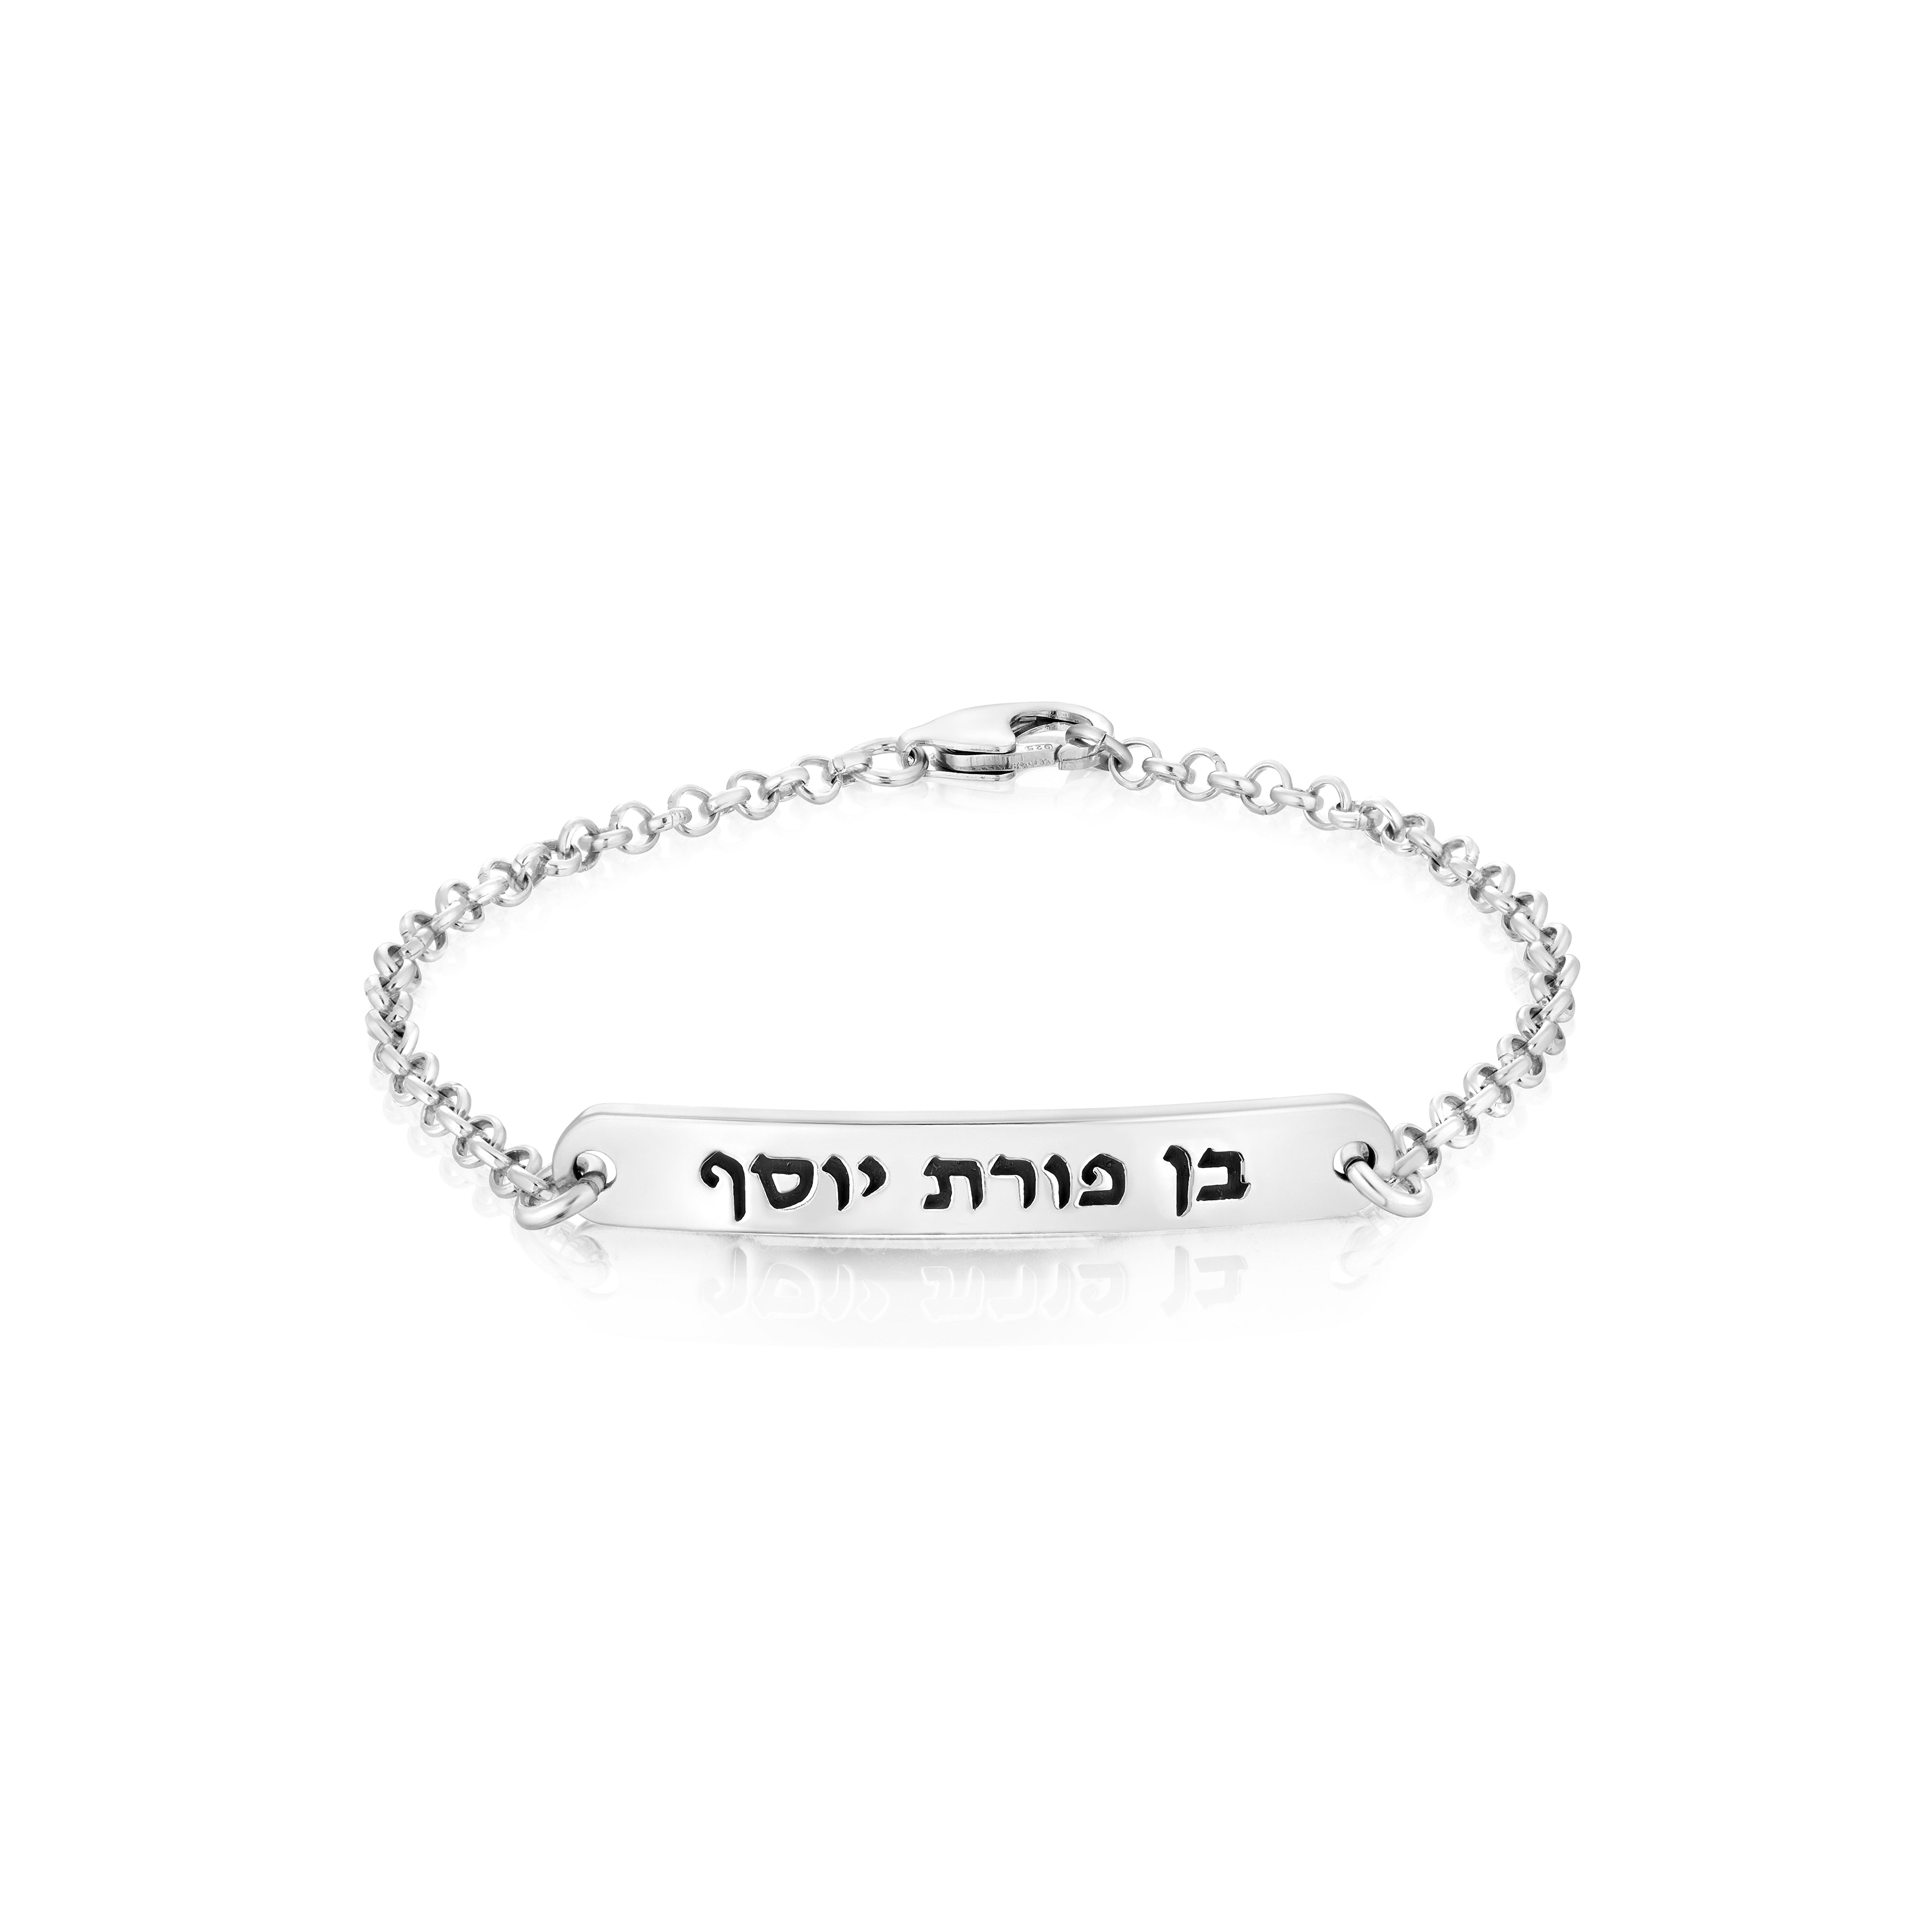 Ben Porat Yosef a Jewish Bracelet, Bat Mitzvah Gift, Hebrew Bracelet, Blessing bracelets, Blessed bracelet, Judaica, A Silver 925 Bracelet